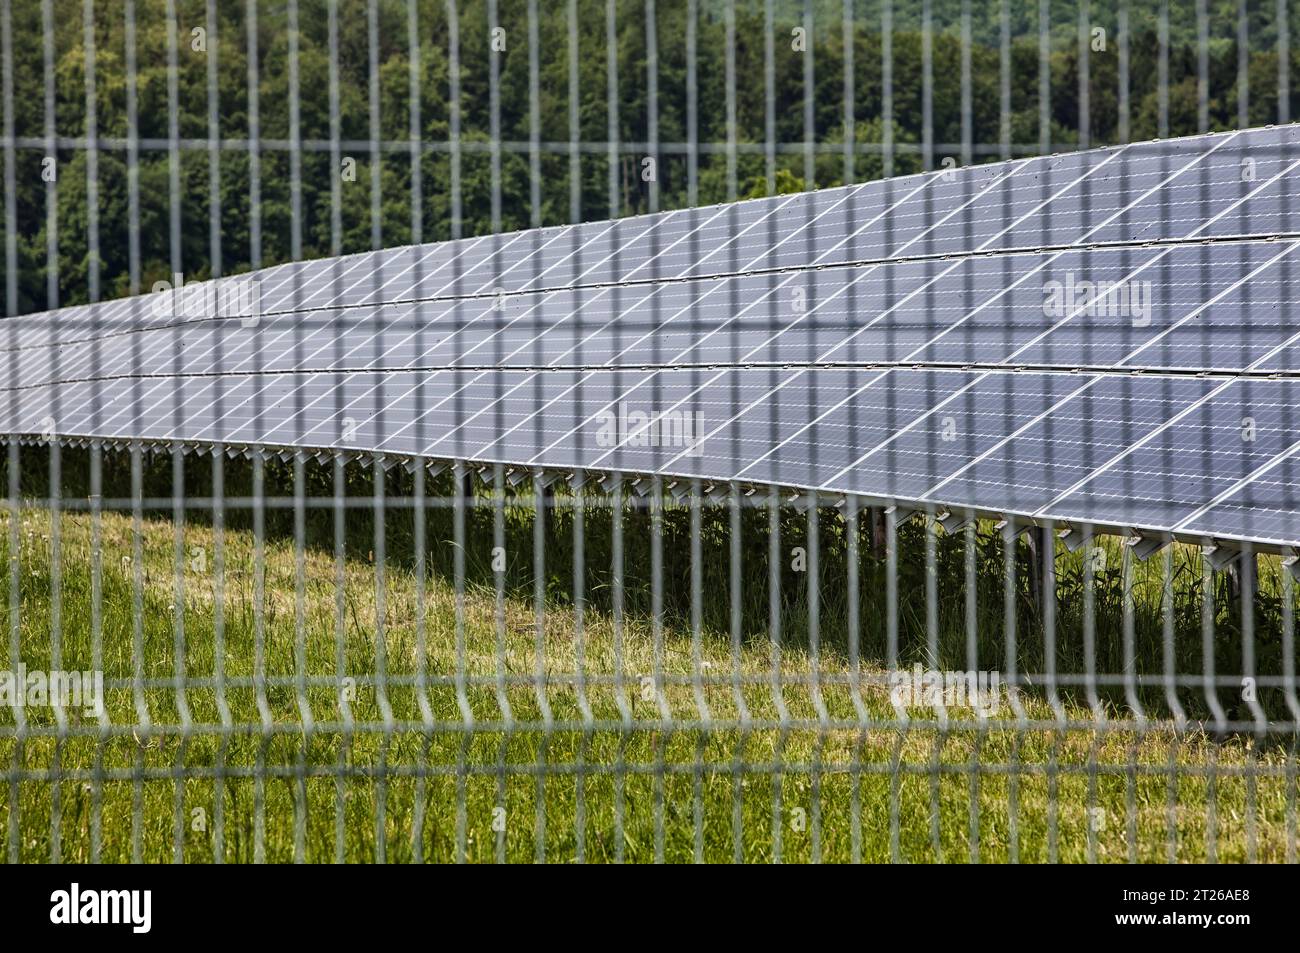 Ferme solaire, près d'Uslar, district de Northeim, Weser Uplands, sud de la Basse-Saxe, Allemagne, Europe Banque D'Images